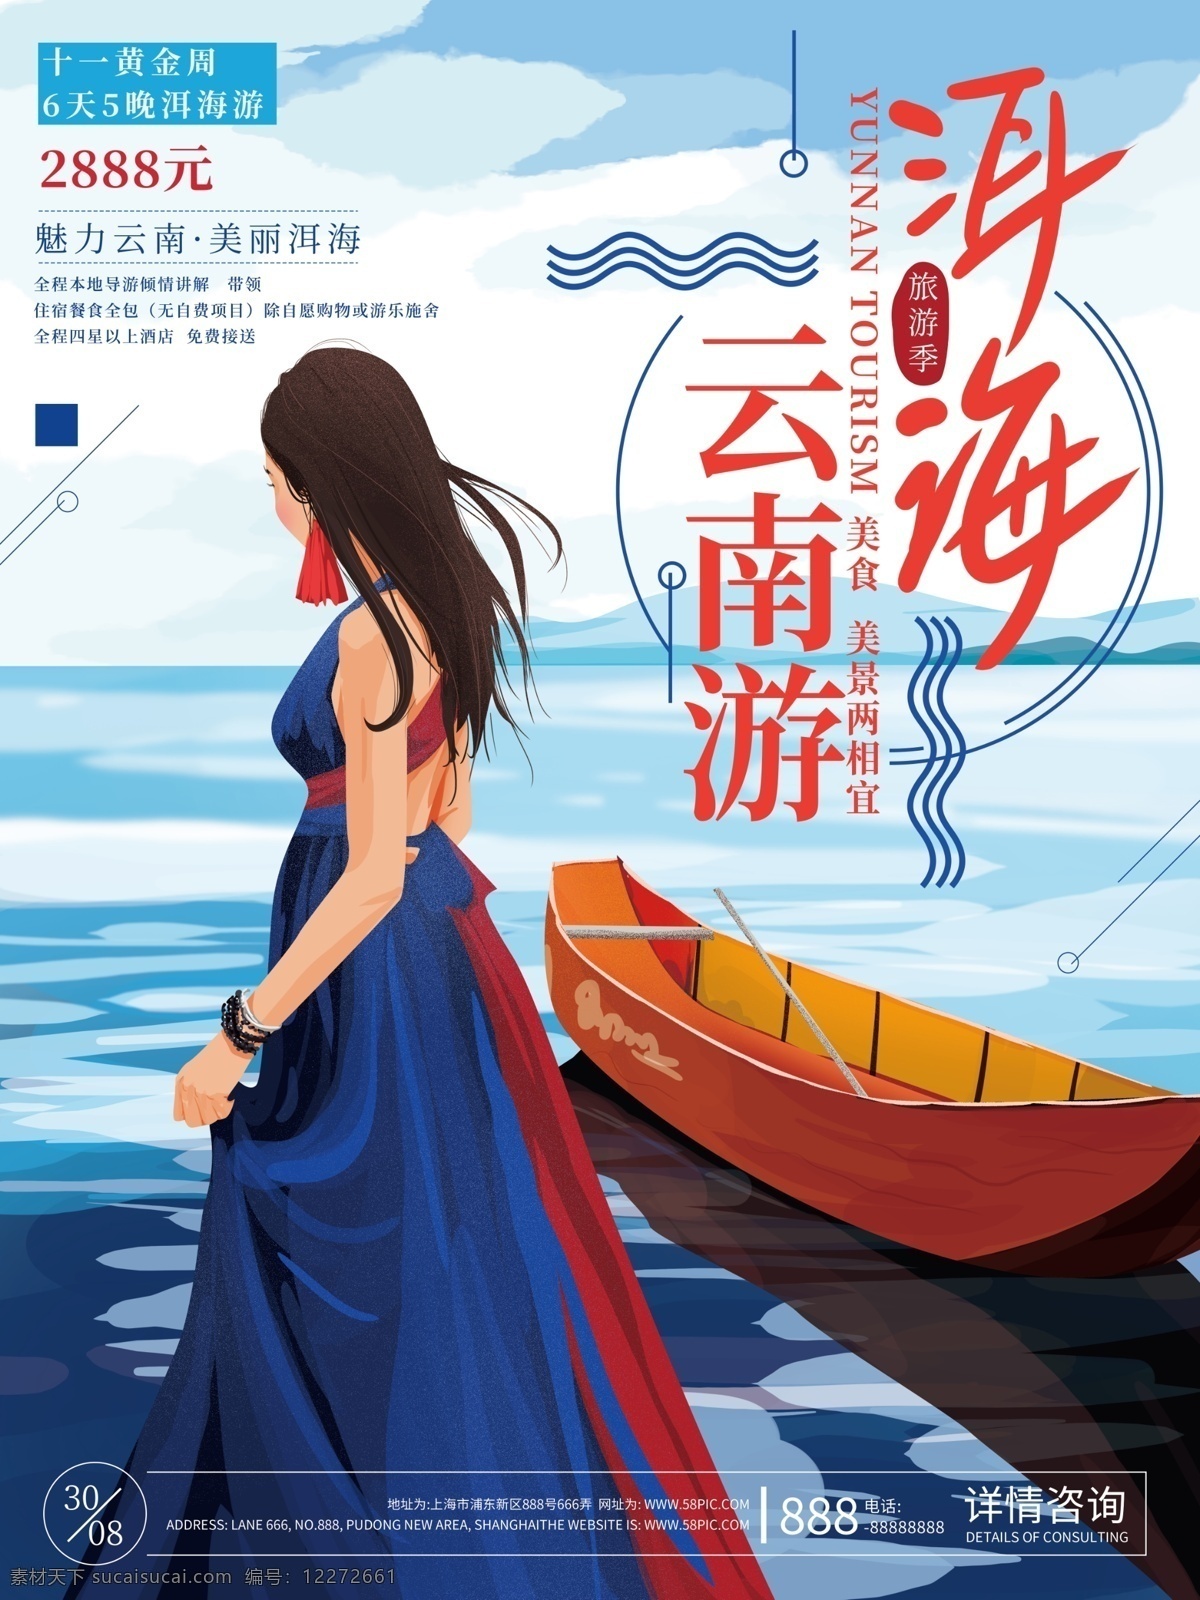 原创 手绘 洱海 国庆 旅游 海报 美女 海边 船 云南 促销 旅游海报